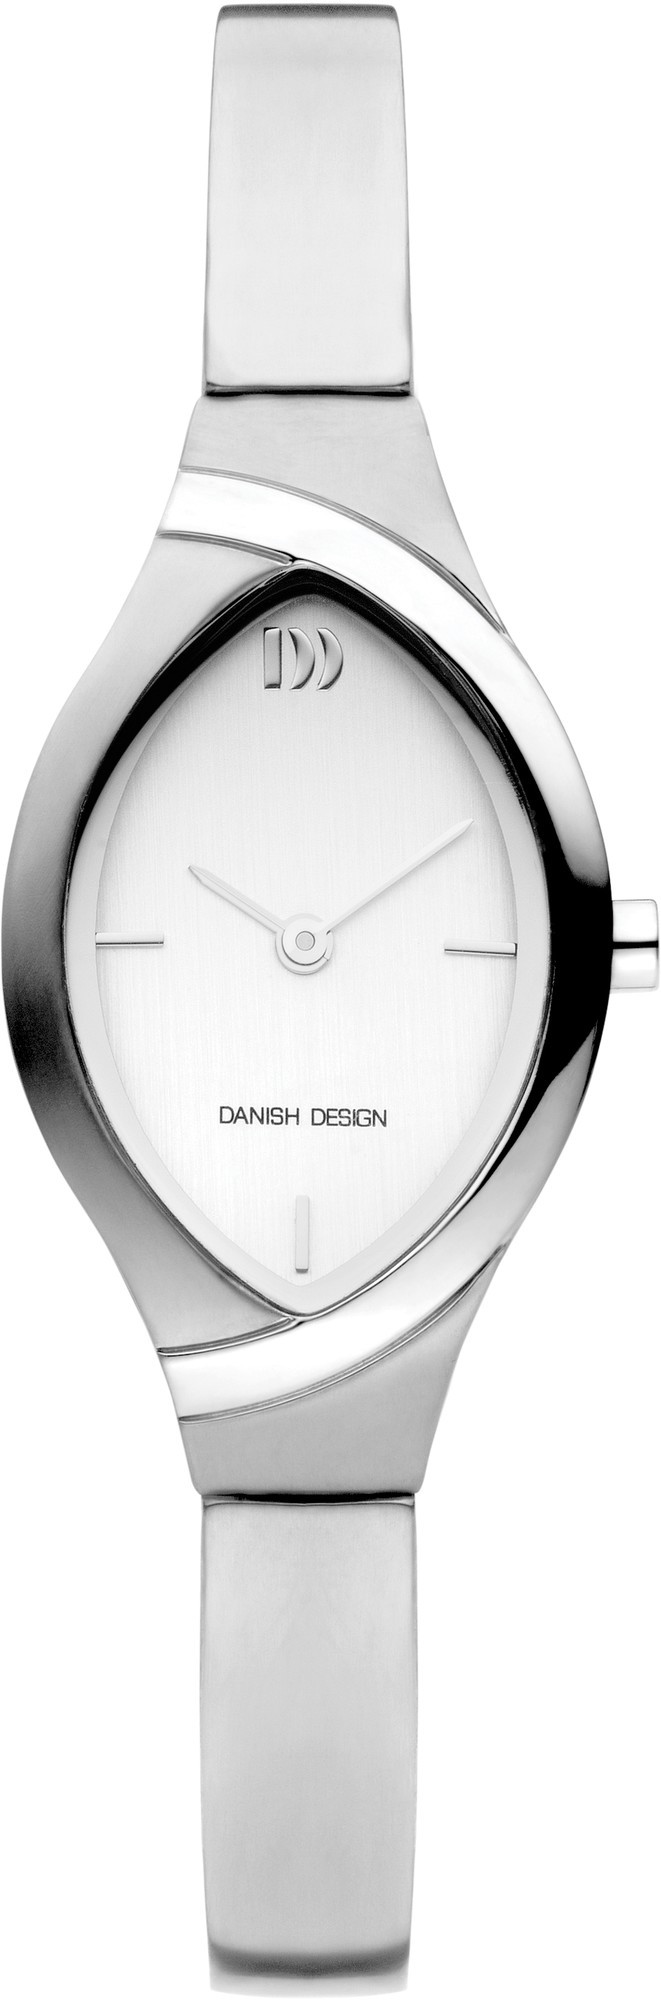 Danish Design IV62Q1228